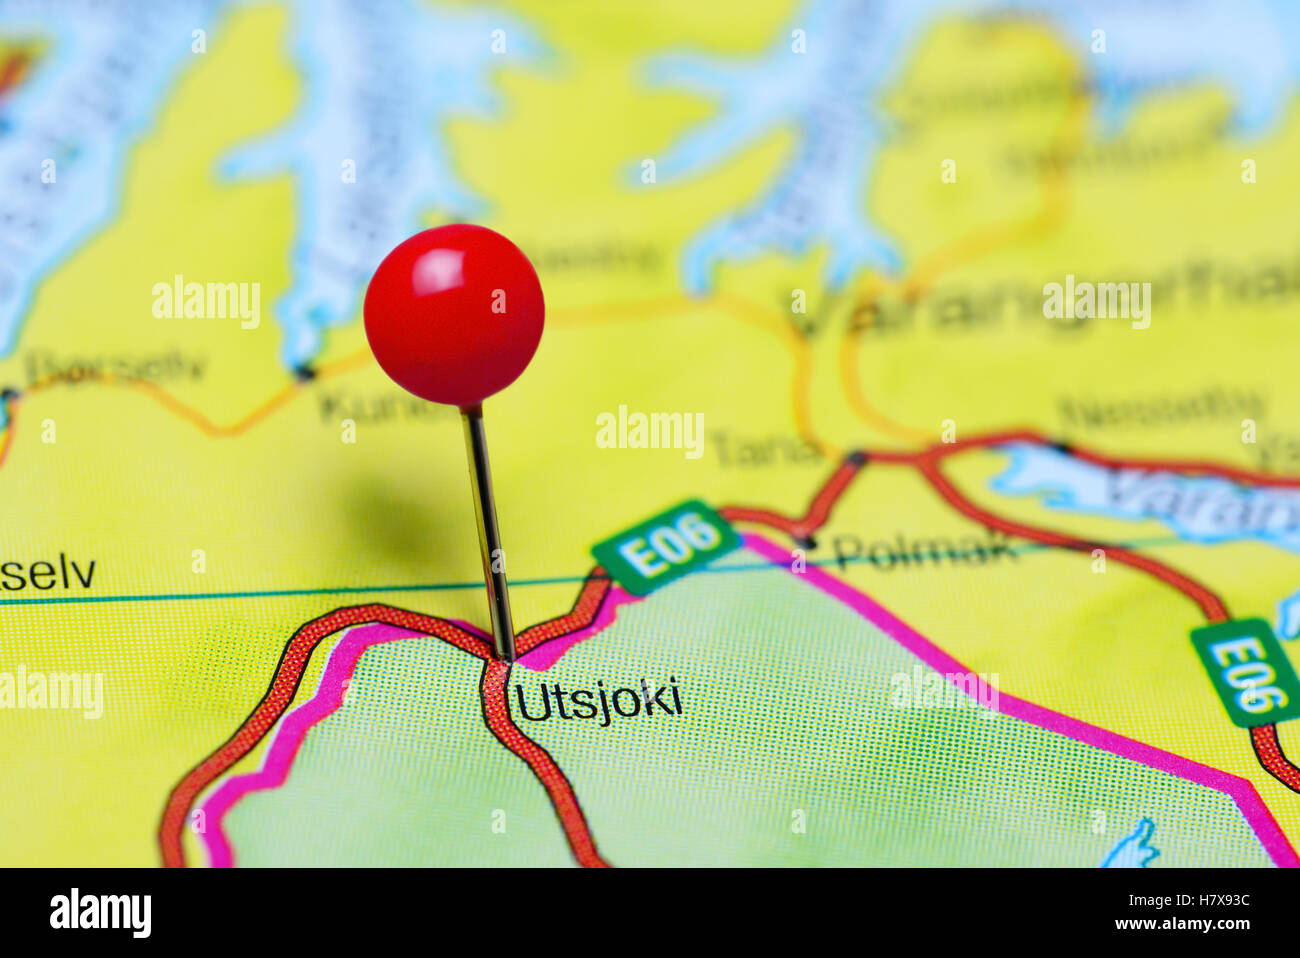 Utsjoki imperniata su una mappa di Finlandia Foto Stock